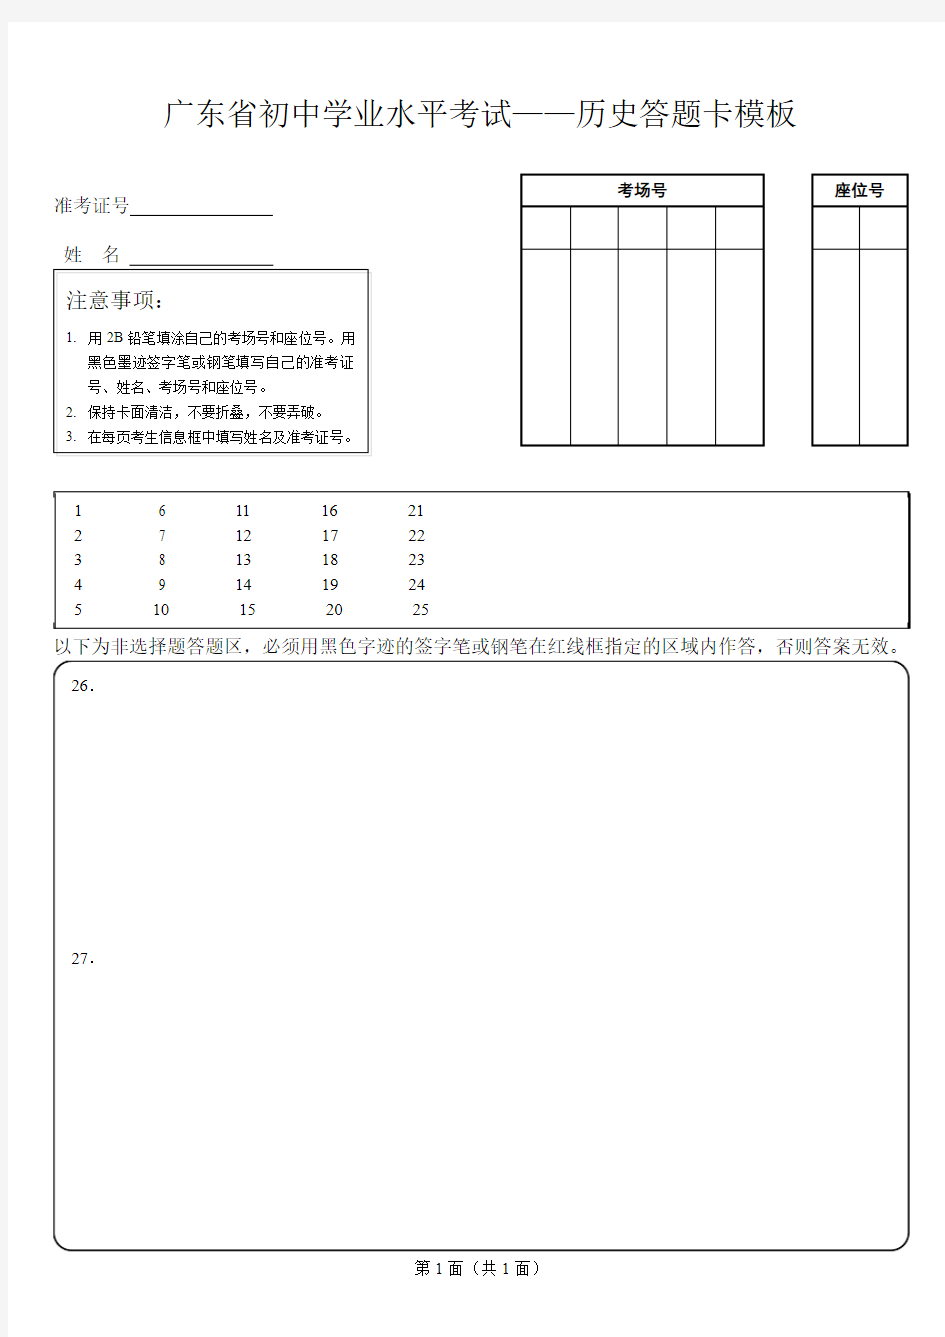 广东省初中学业水平考试——历史答题卡模板